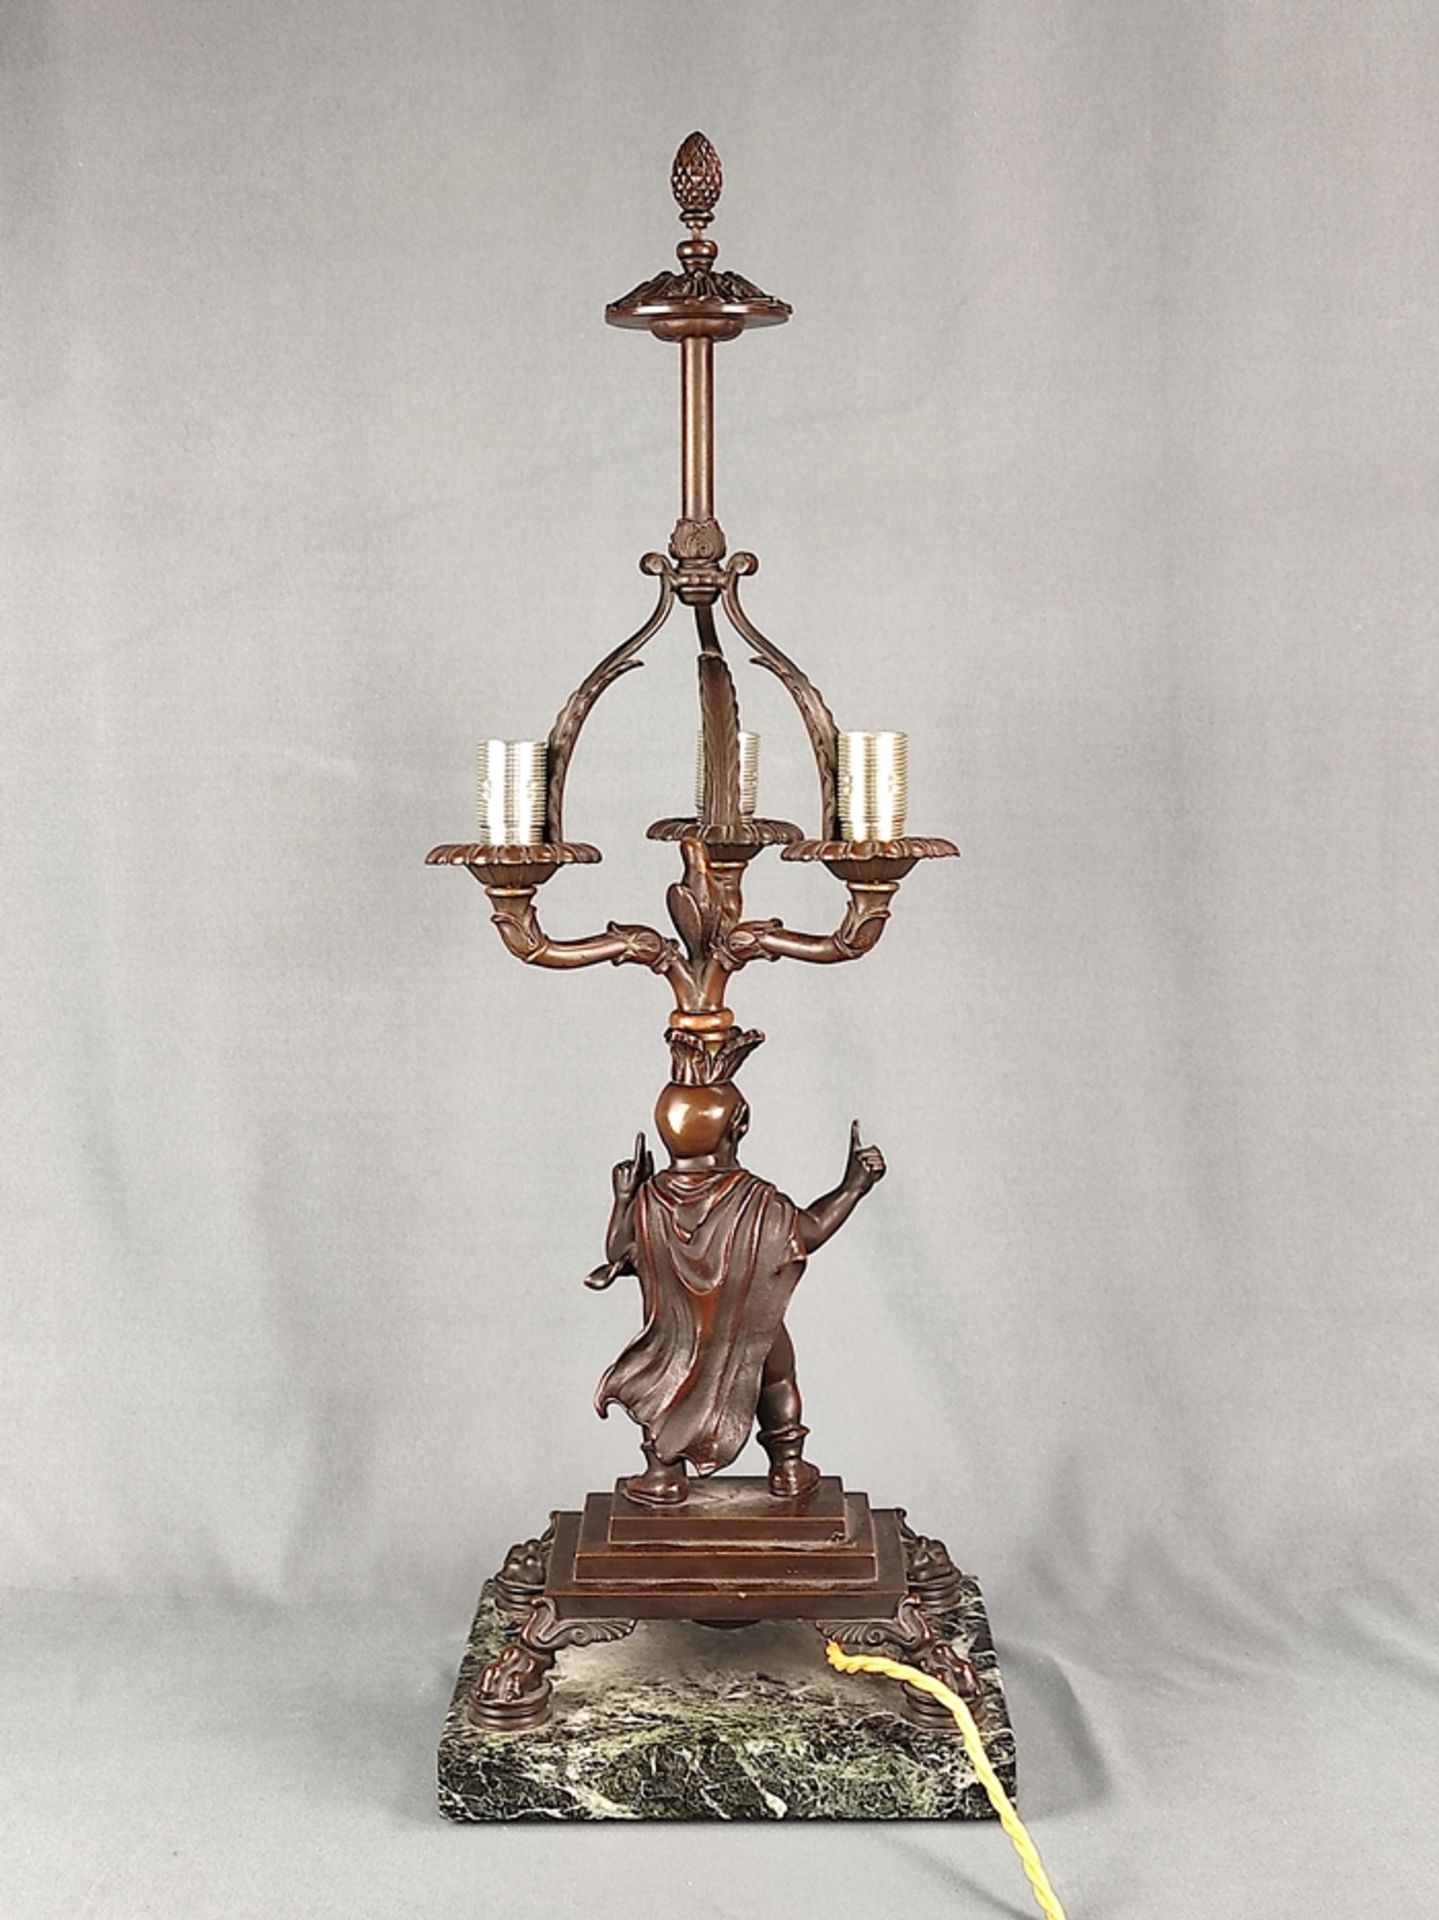 Bronzelampe "Faun", erste Hälfte 20. Jahrhundert, elektrisch, rechteckige Marmorplinthe, darüber ge - Bild 3 aus 4